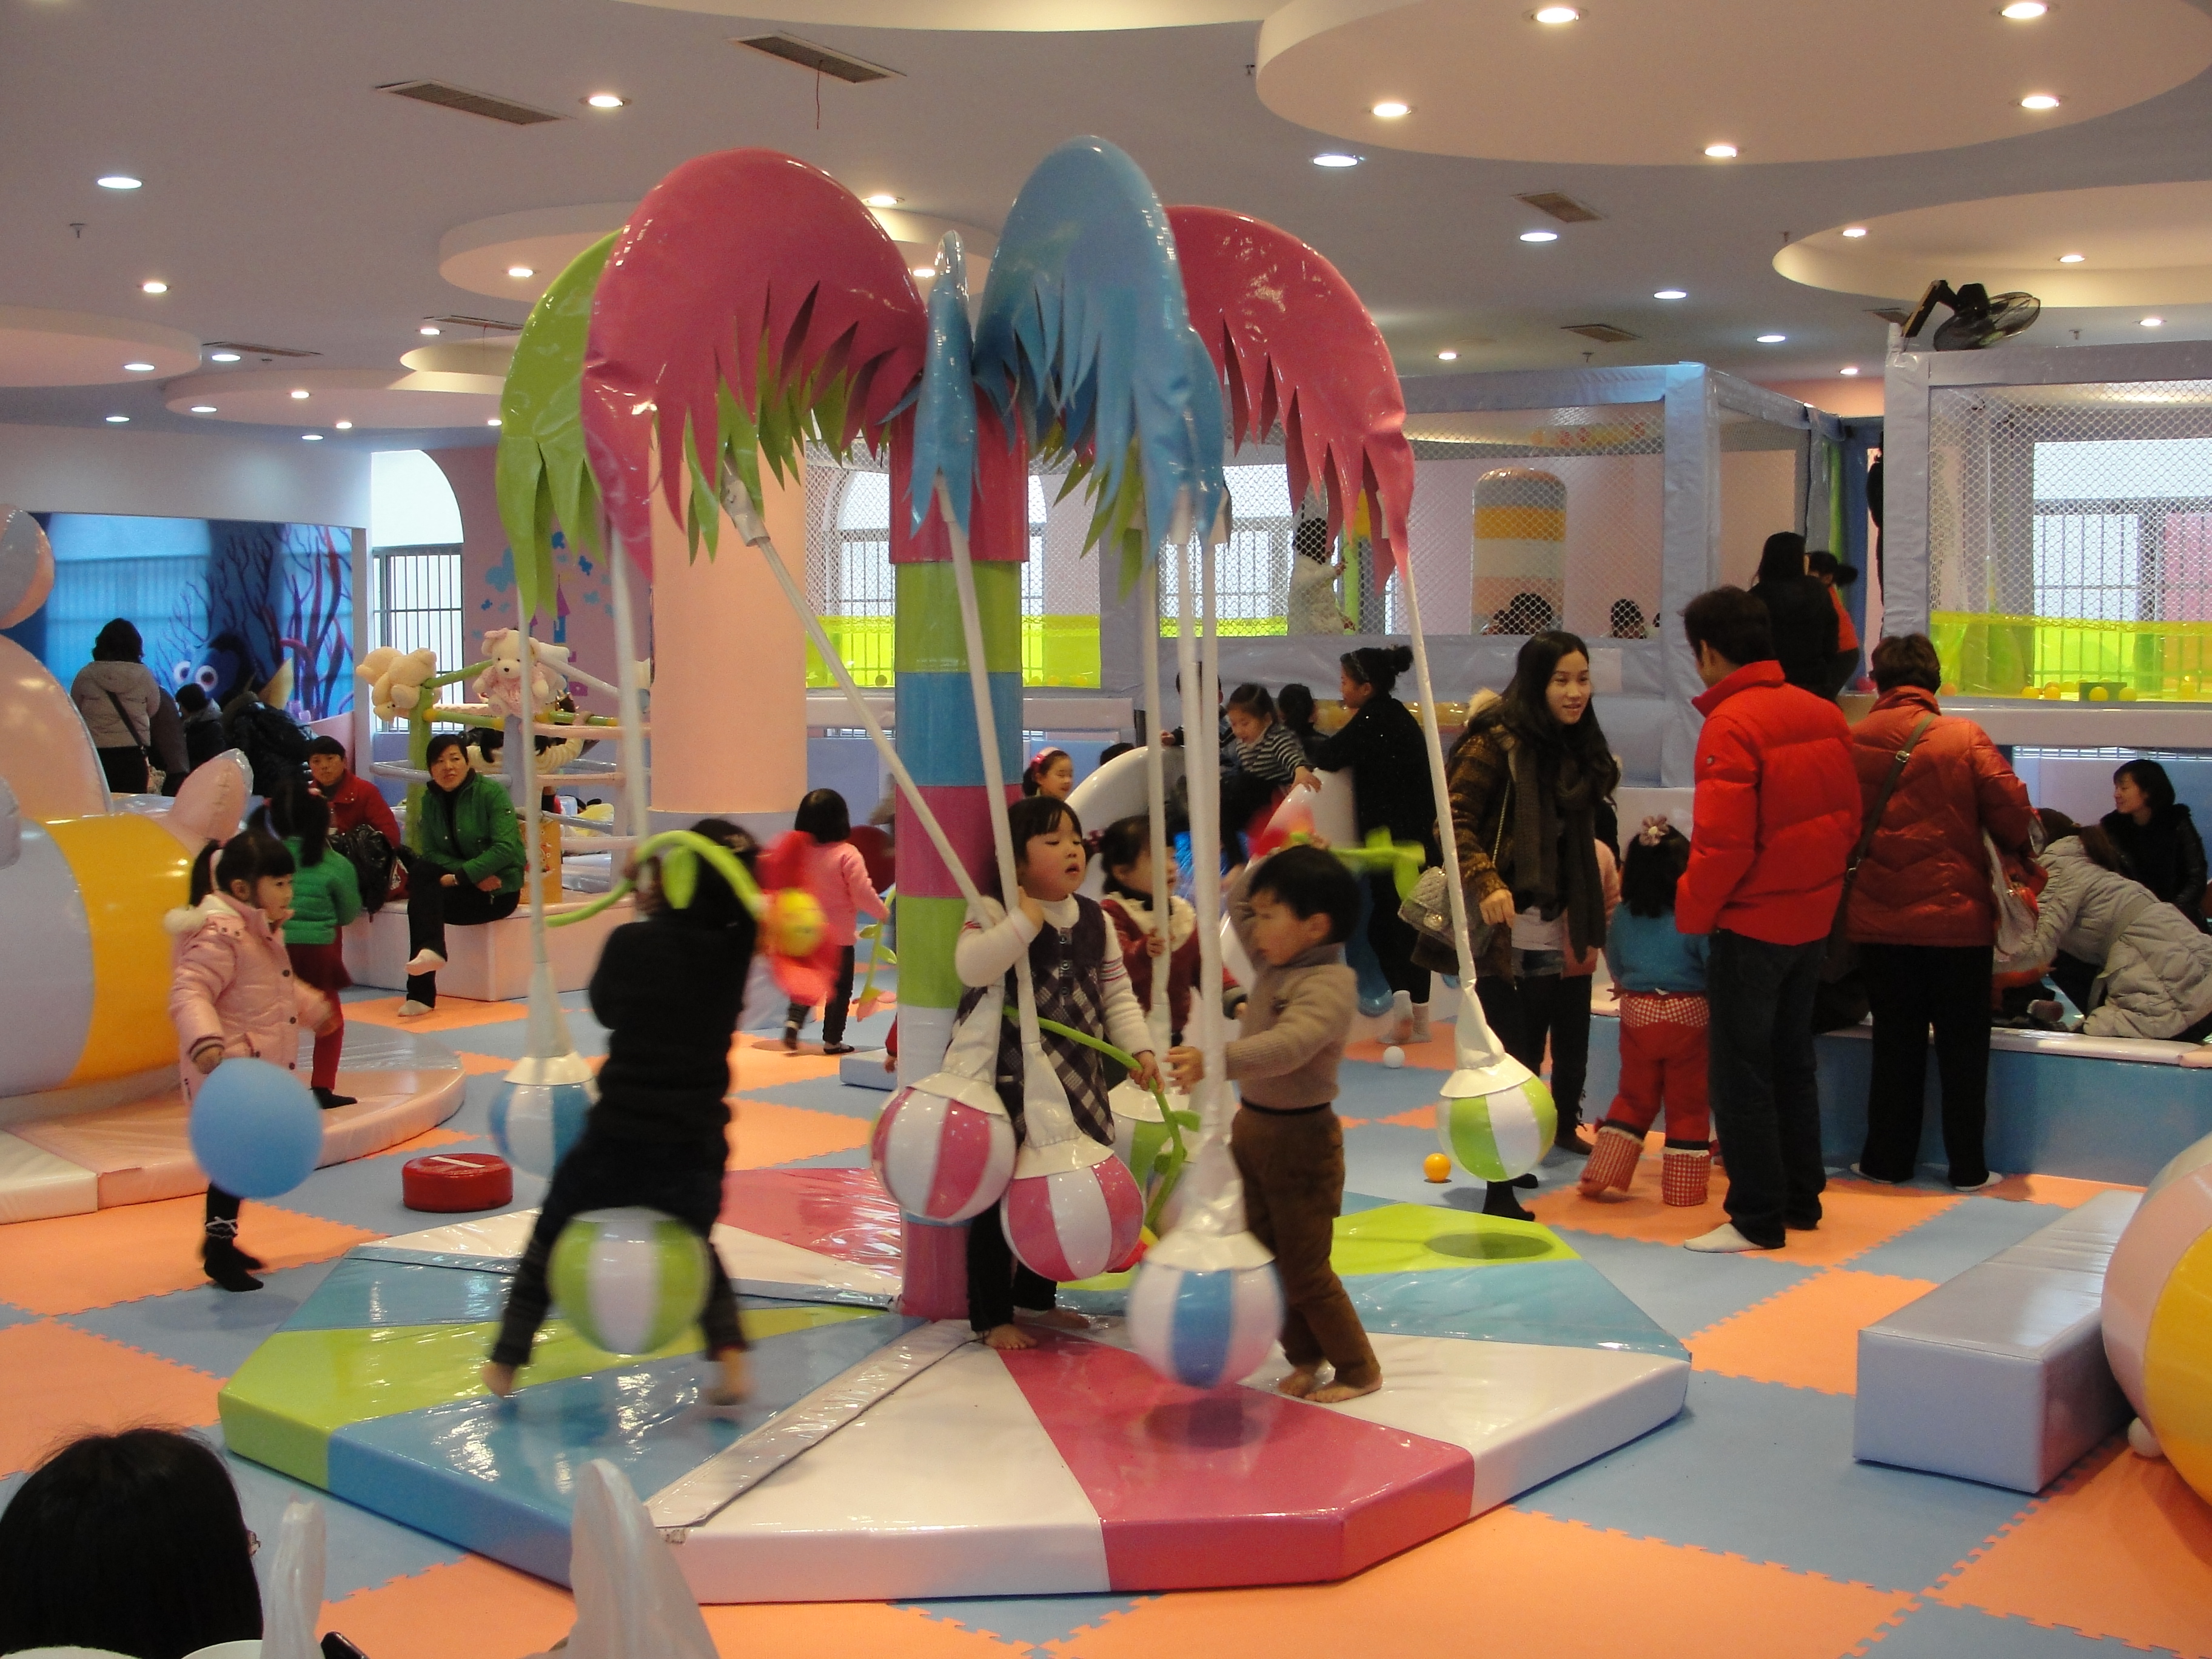 Centro de juego suave para niños con temática oceánica